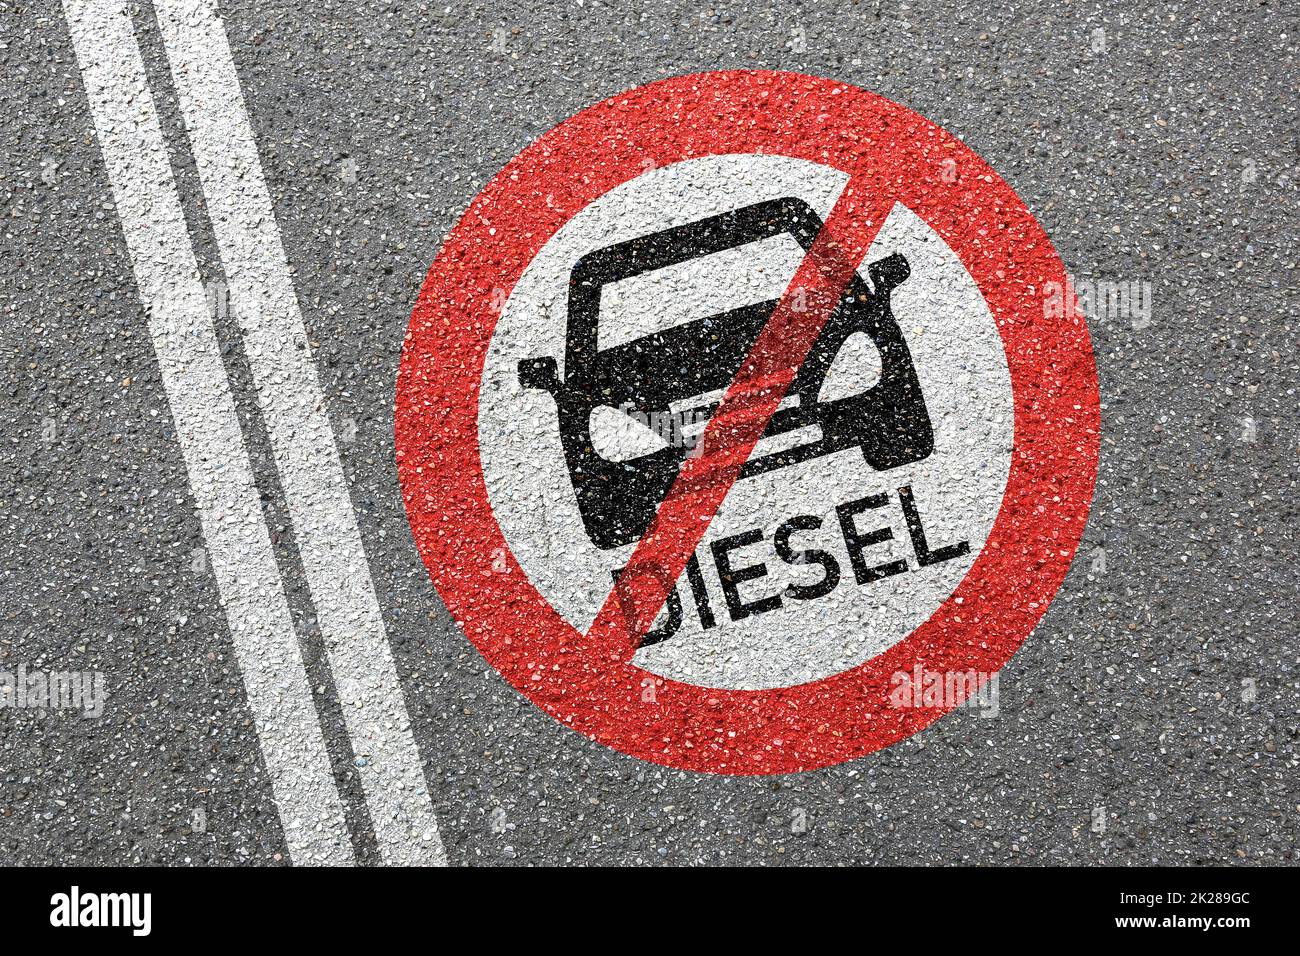 Diesel Fahrverbot Straßenfahrzeug nicht erlaubt Verbotszone Stockfoto